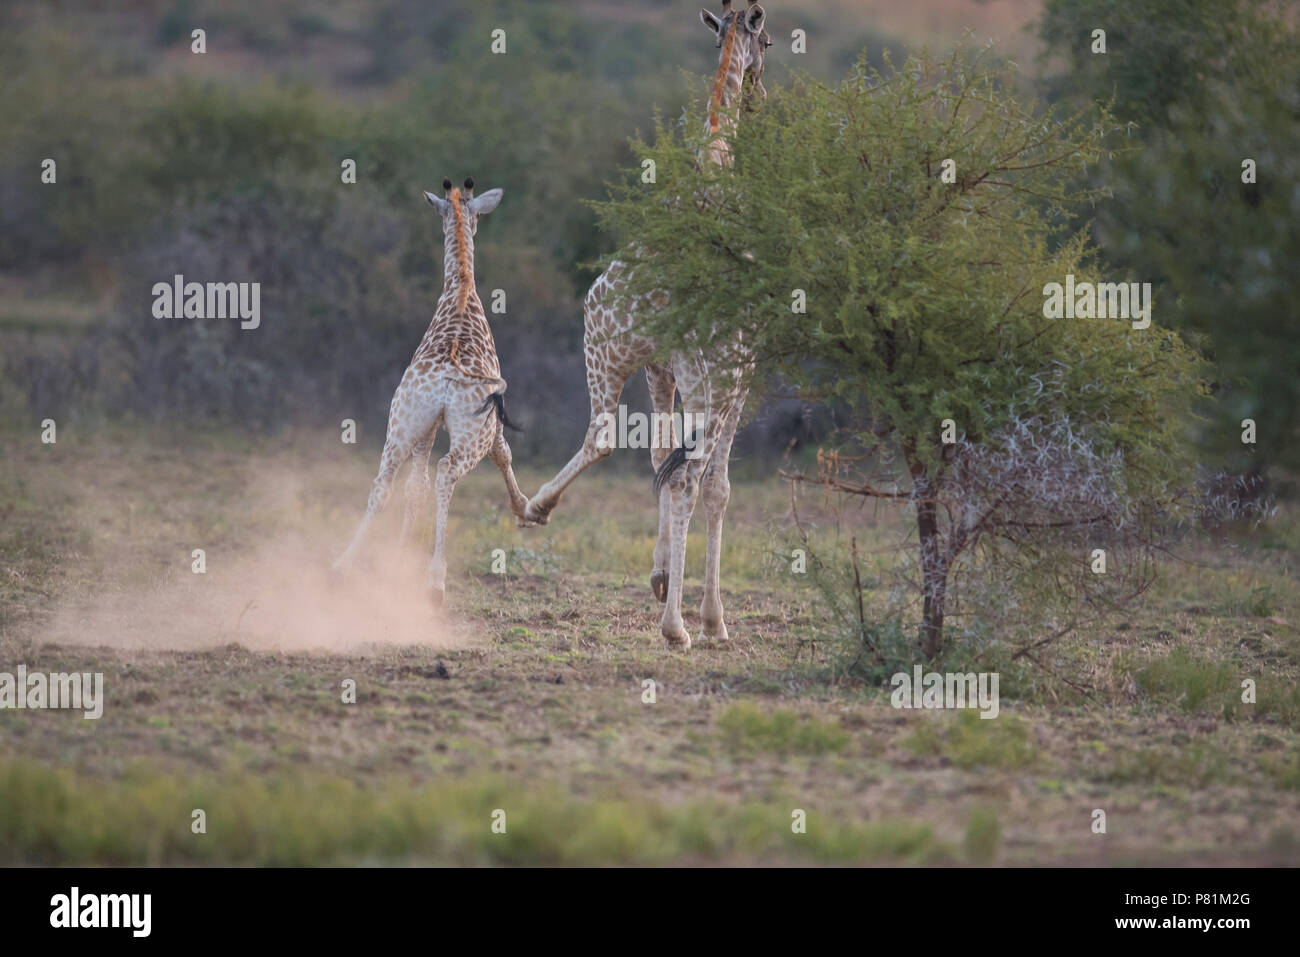 Les Girafes sauvages jouer combats ressemble à une drôle de photo d'animaux 5 Banque D'Images